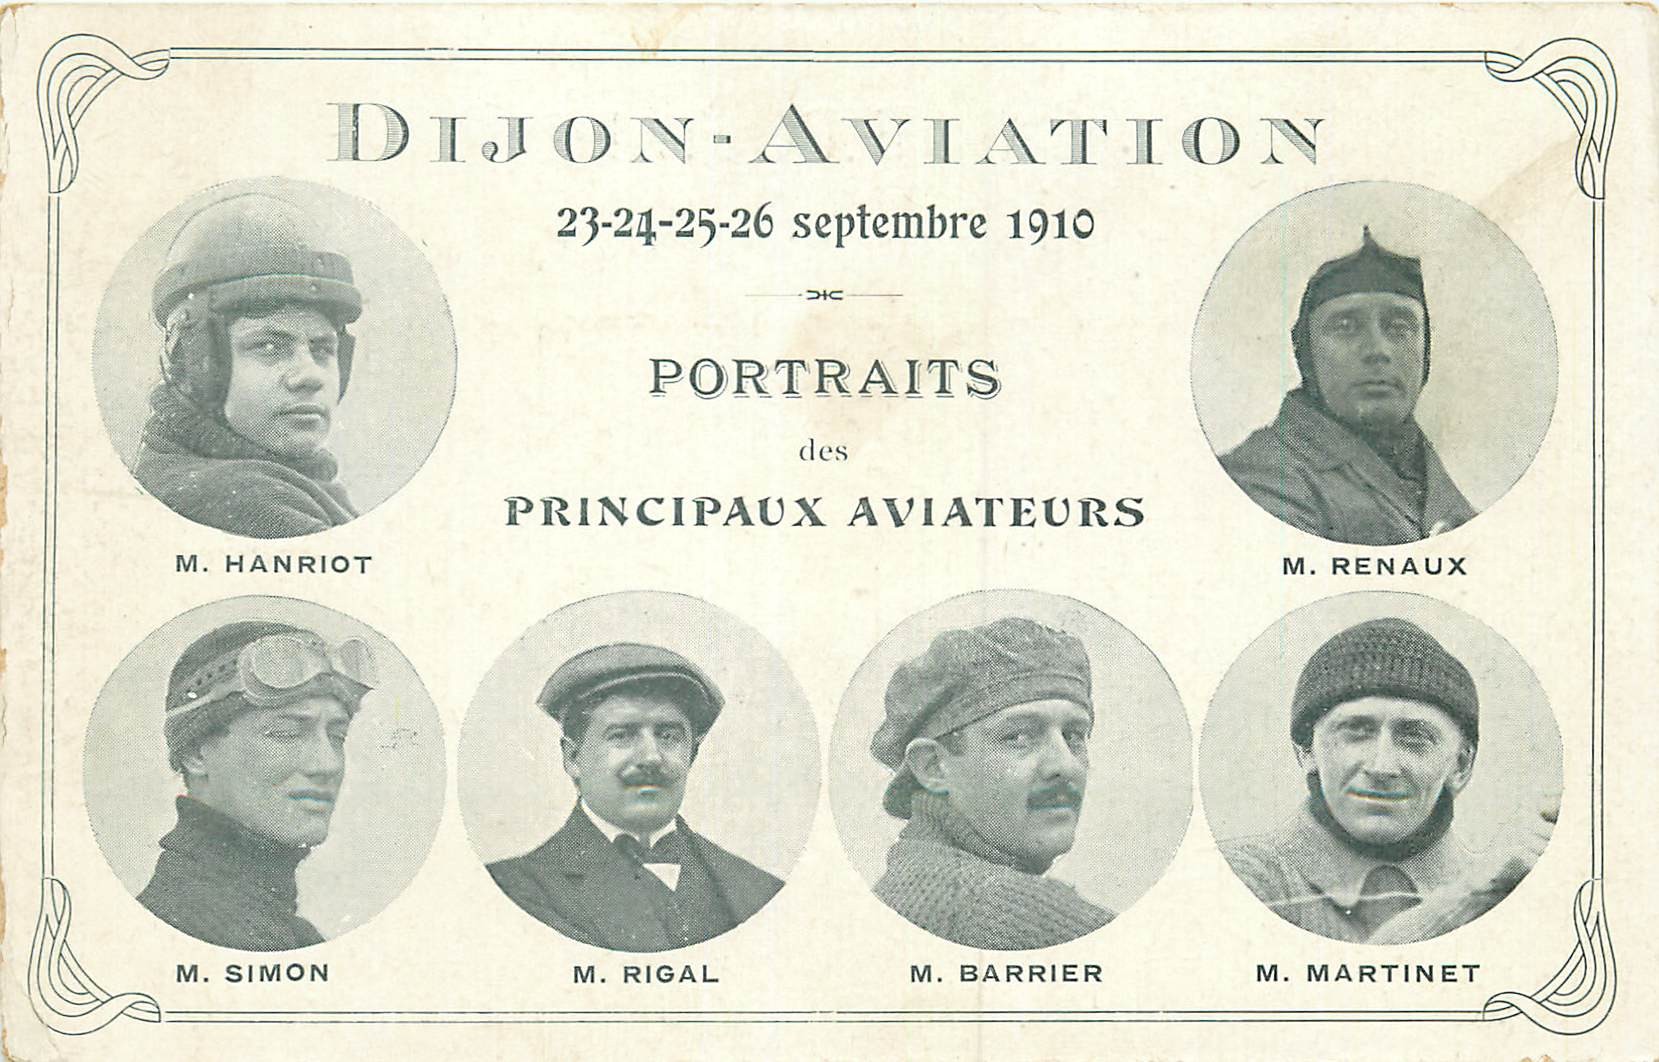 WW DIJON AVIATION. Portraits des principaux Aviateurs en 1910